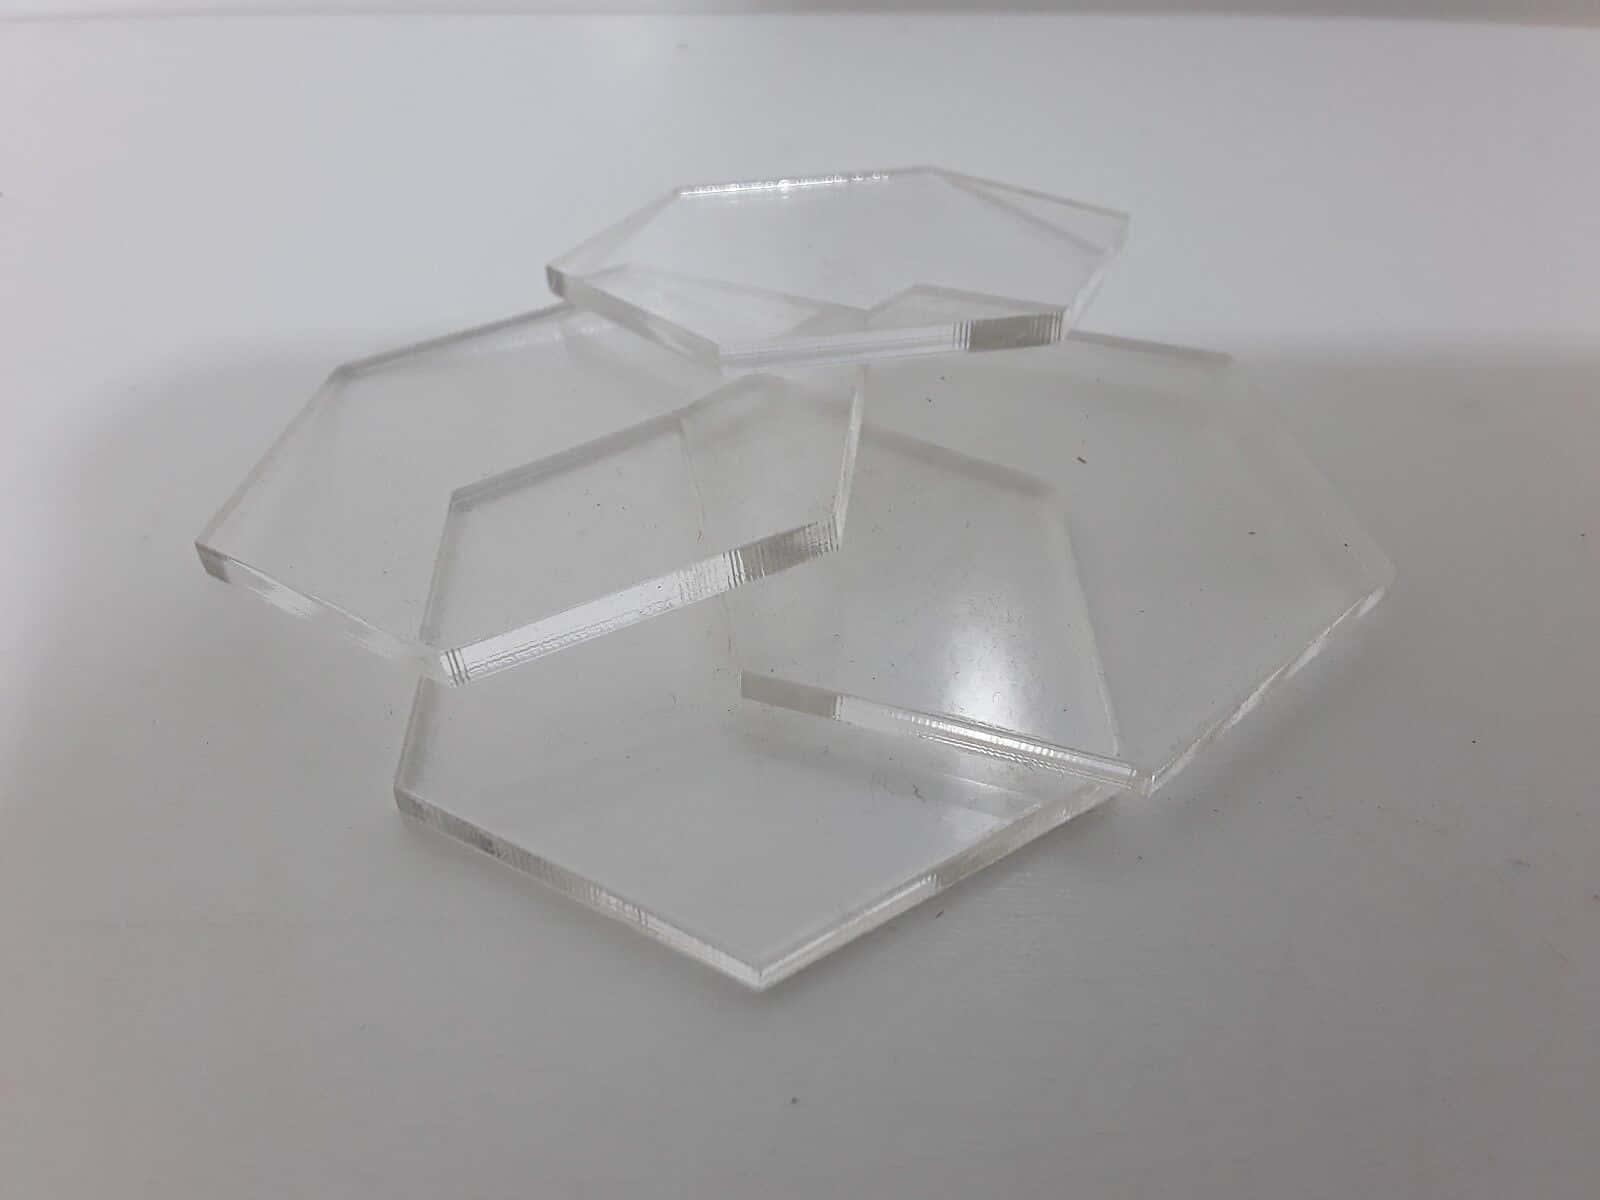 Bildvon Einem Stapel Gläsern In Hexagon-form.